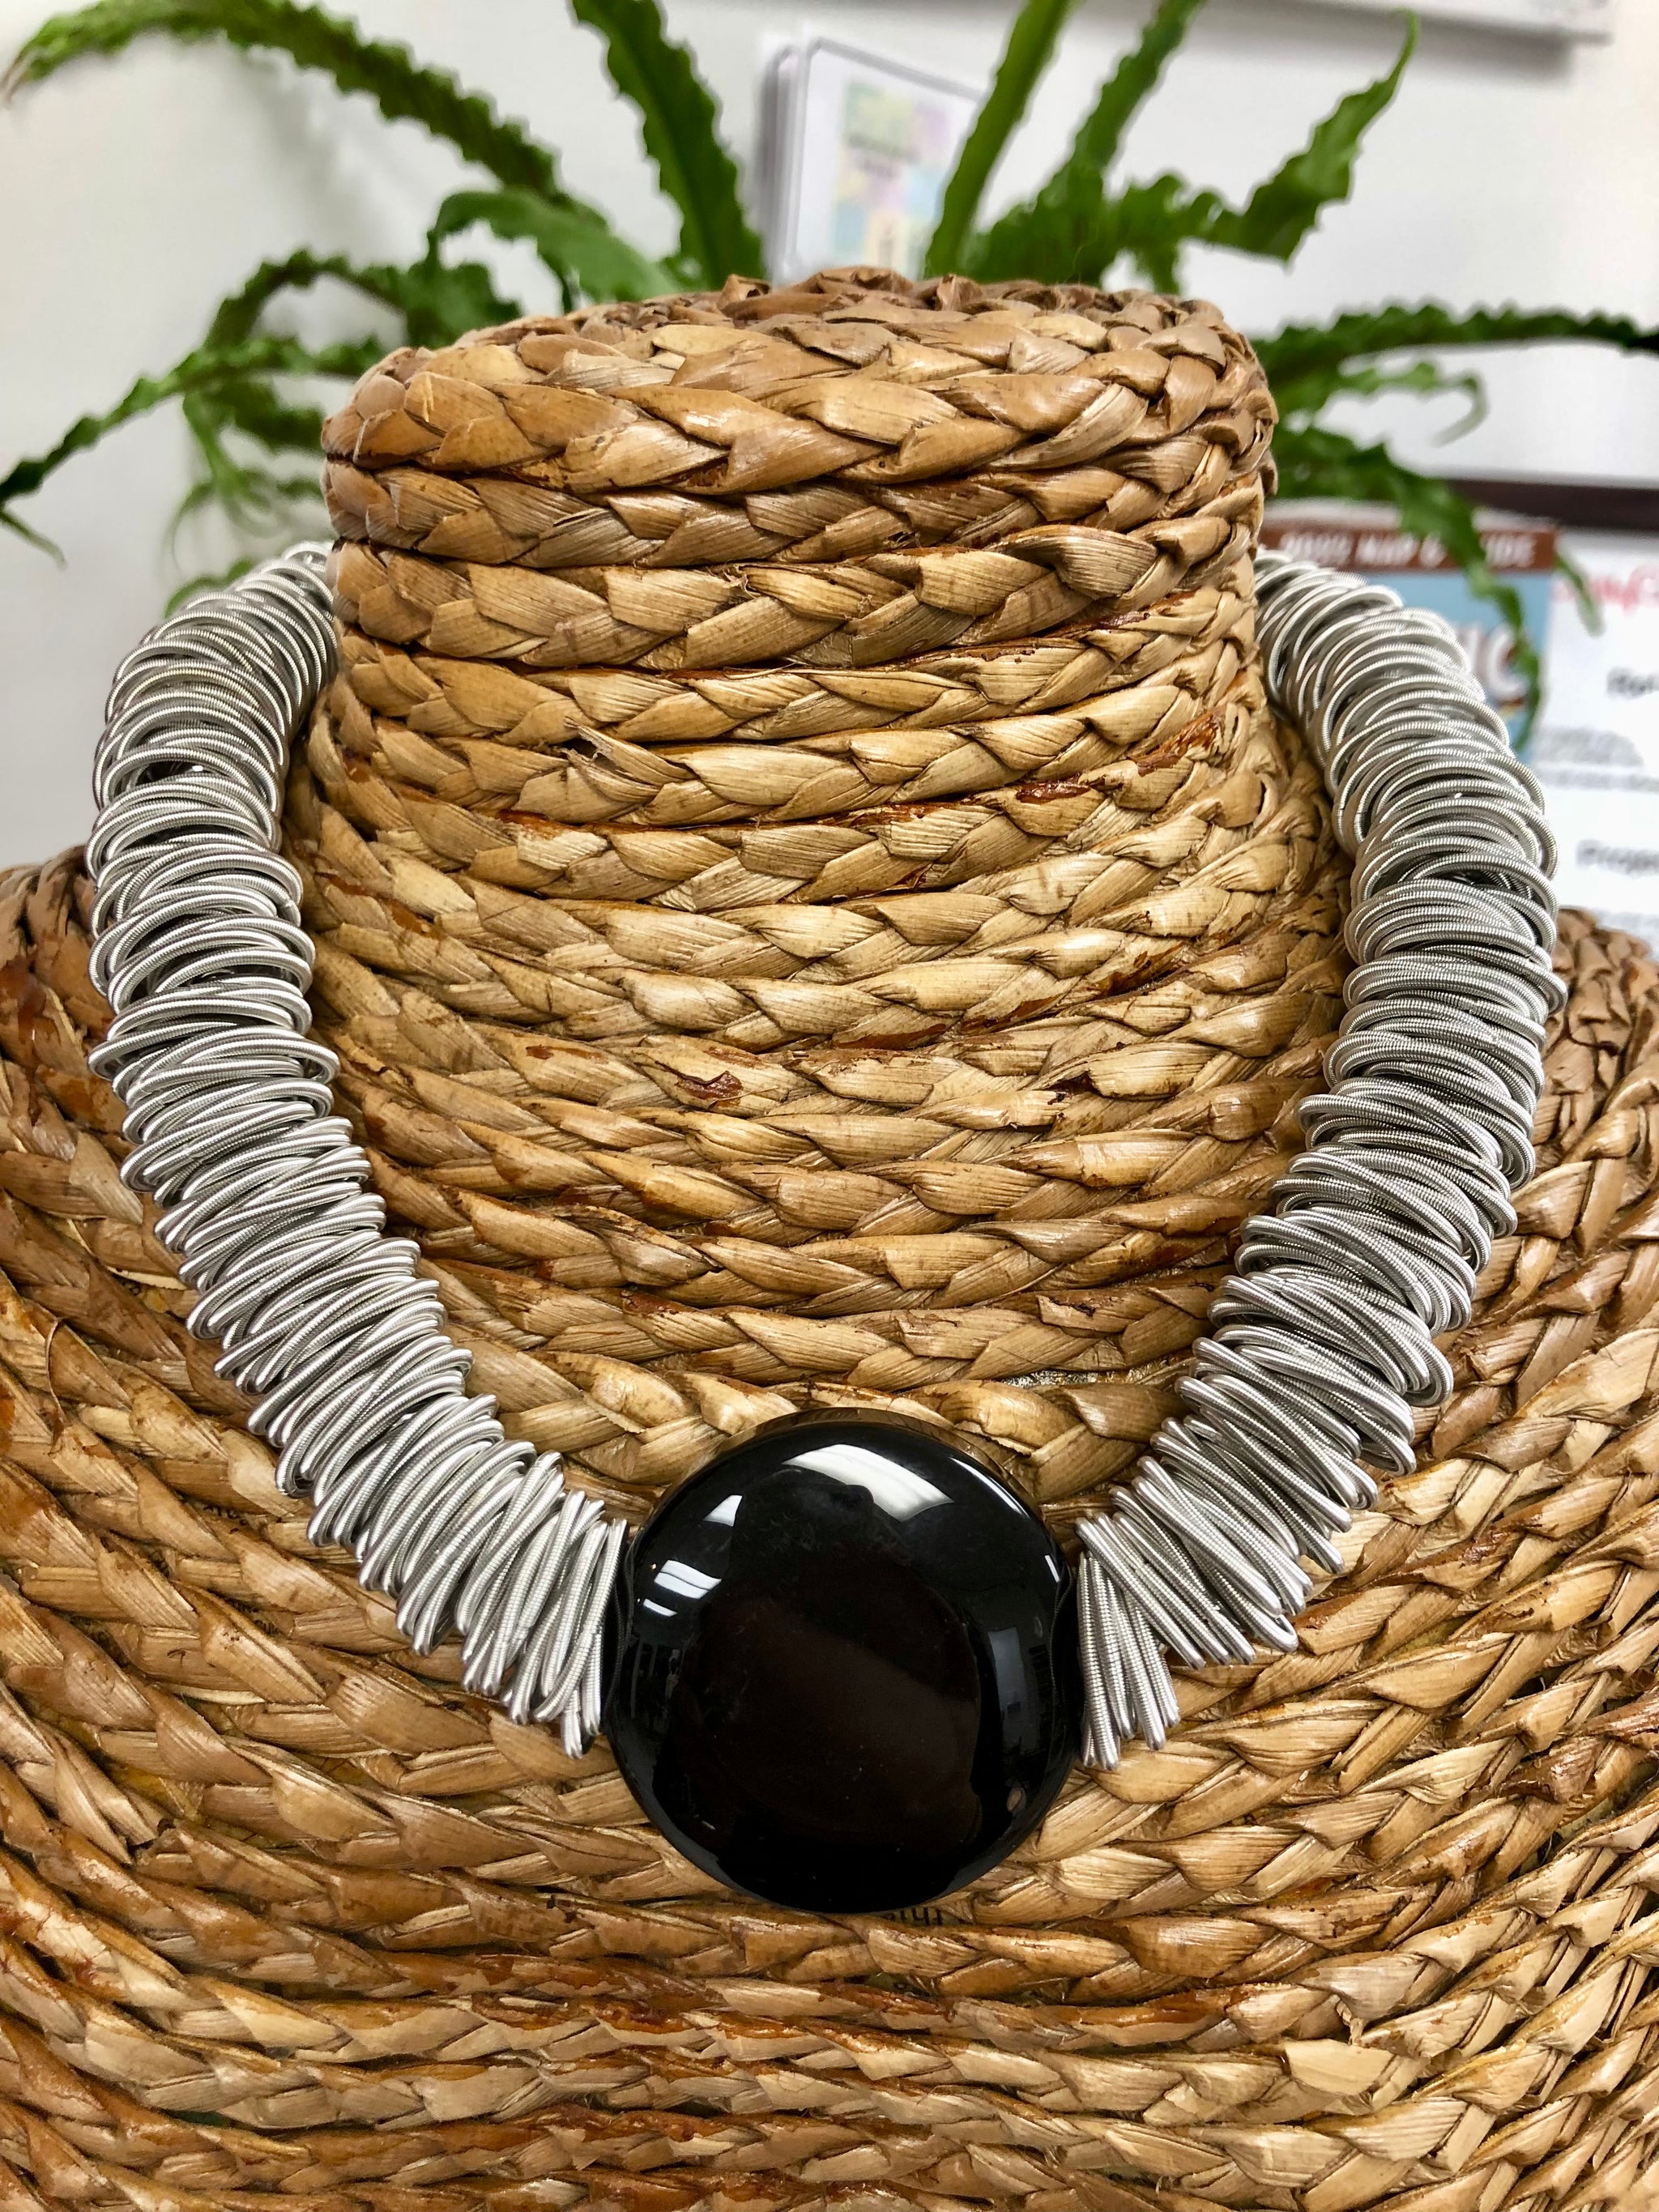 170 Wire wrapping ideas  wire jewelry, jewelry tutorials, wire wrapped  jewelry